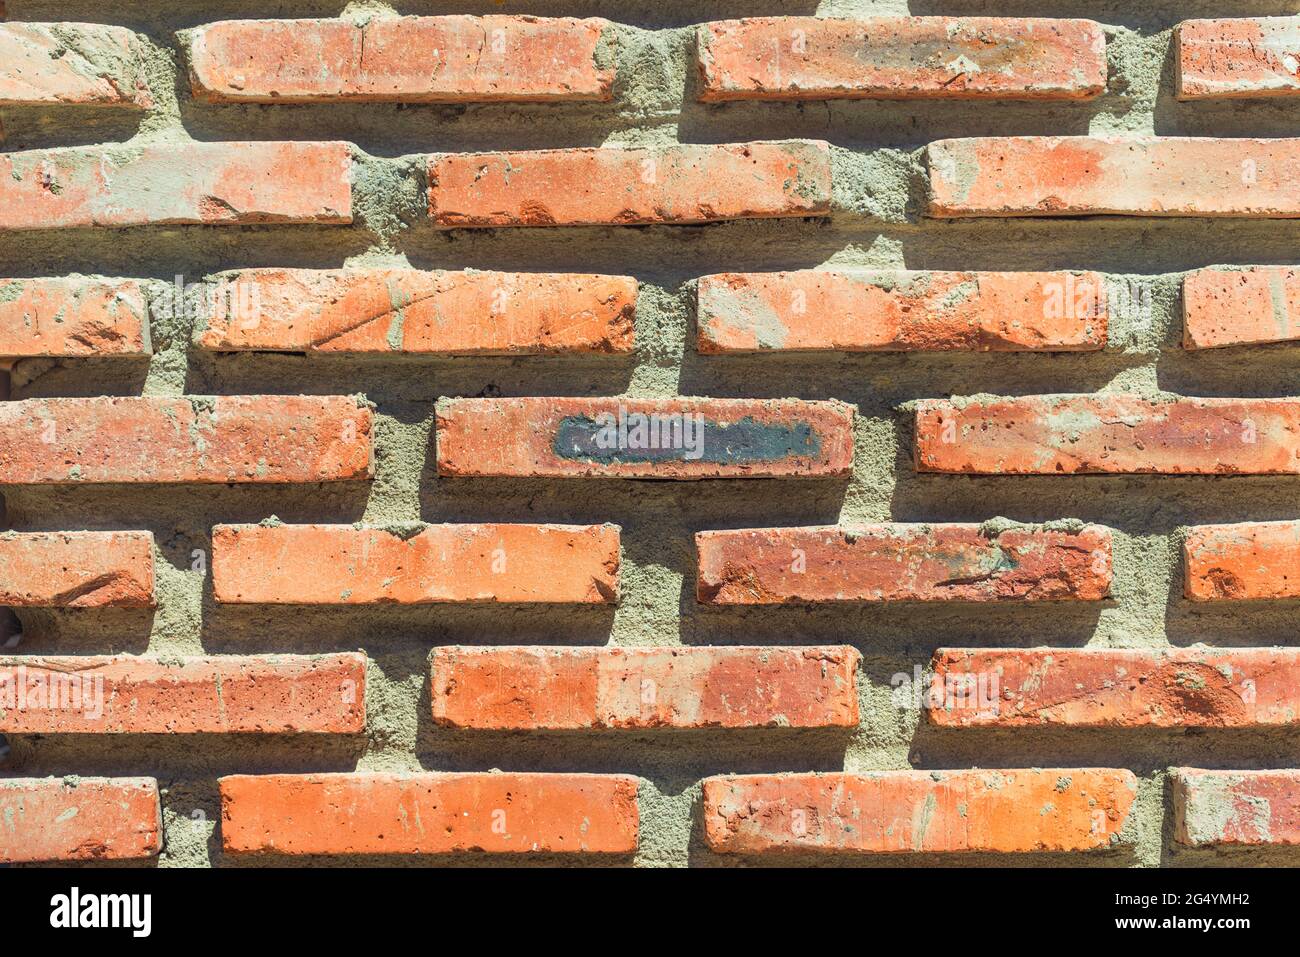 red brick masonry wall background closeup Stock Photo